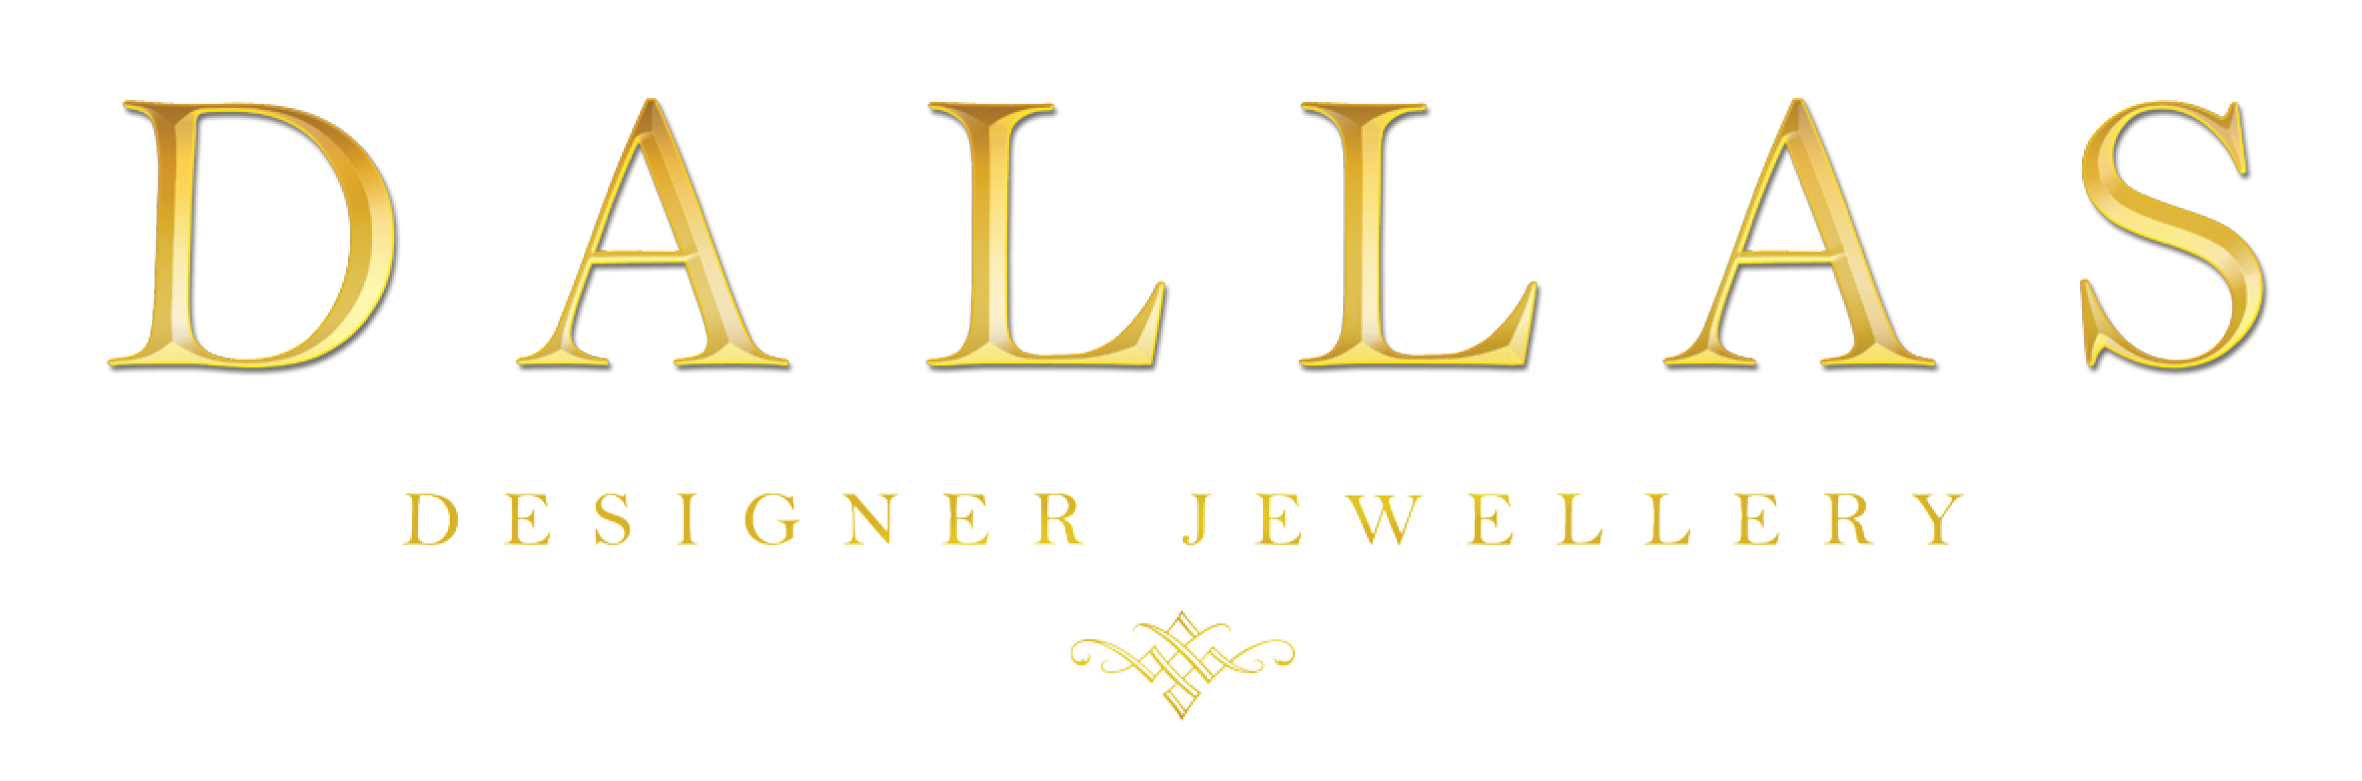 Dallas Designer Jewellery 